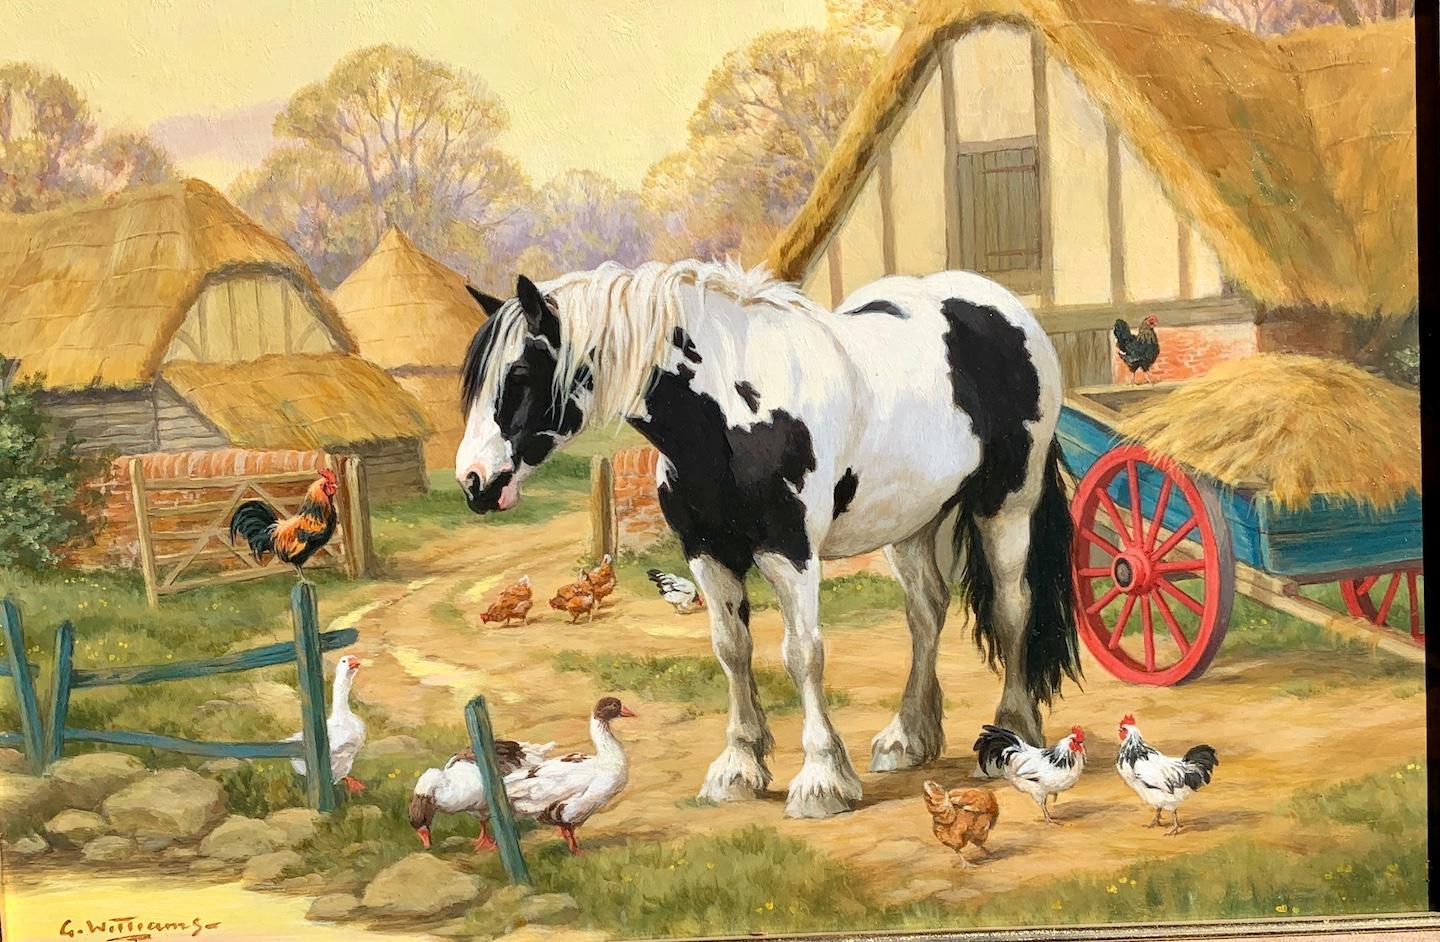 Scène de ferme anglaise avec un cheval de ferme, des poulets, des canards et un chalet perché - Painting de Glynn Williams